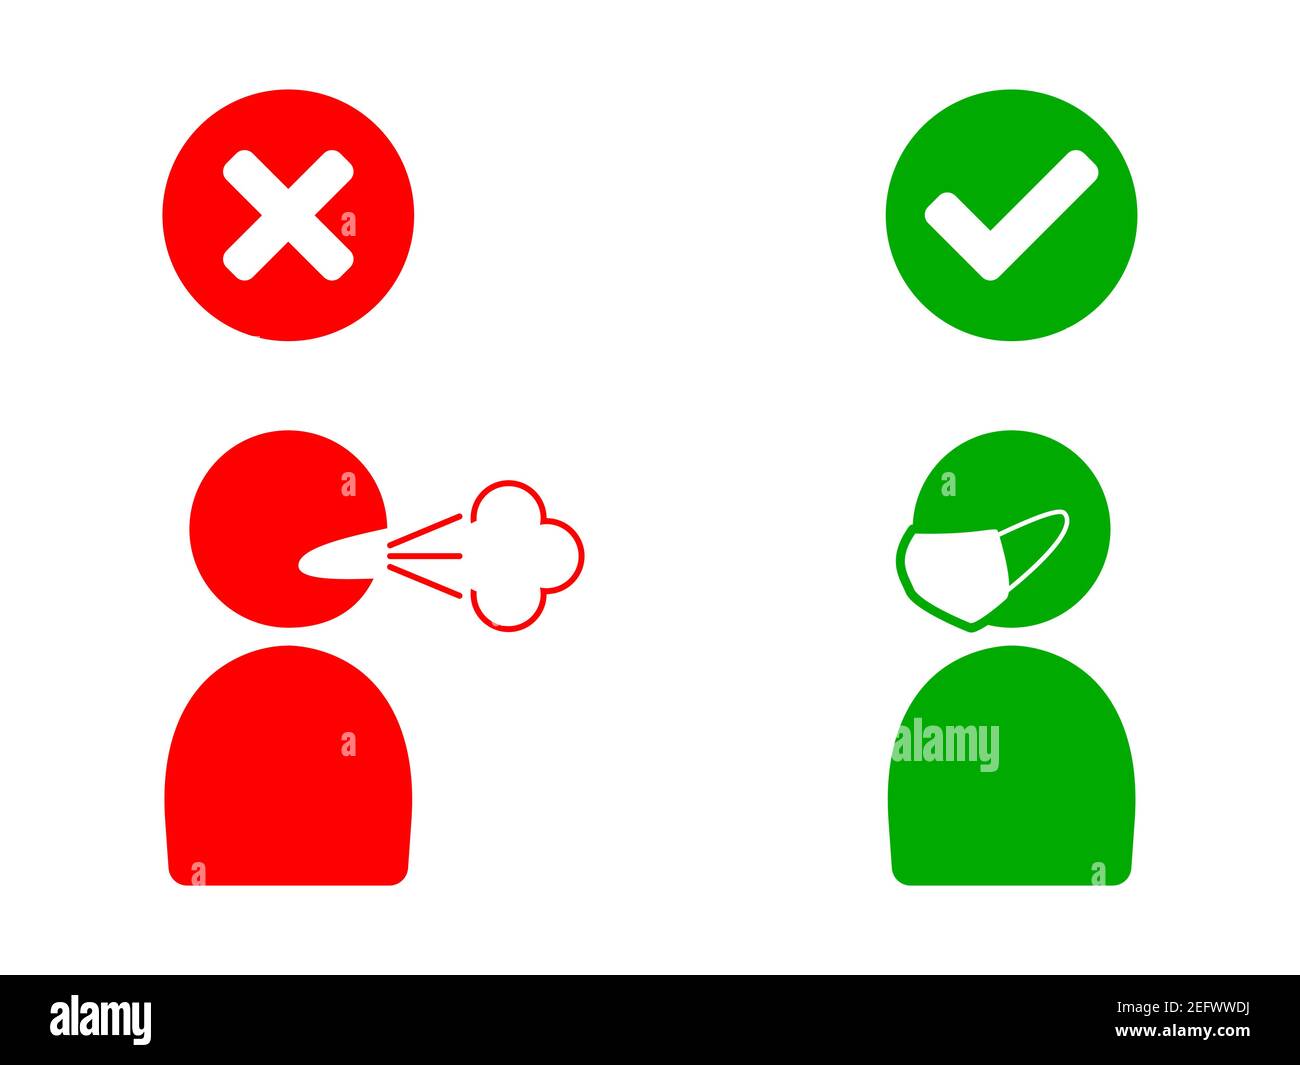 No Face Mask No Entry Sign Mostra la persona che tosse o starnuti senza maschera e la persona che indossa un'icona maschera. Immagine vettoriale. Illustrazione Vettoriale